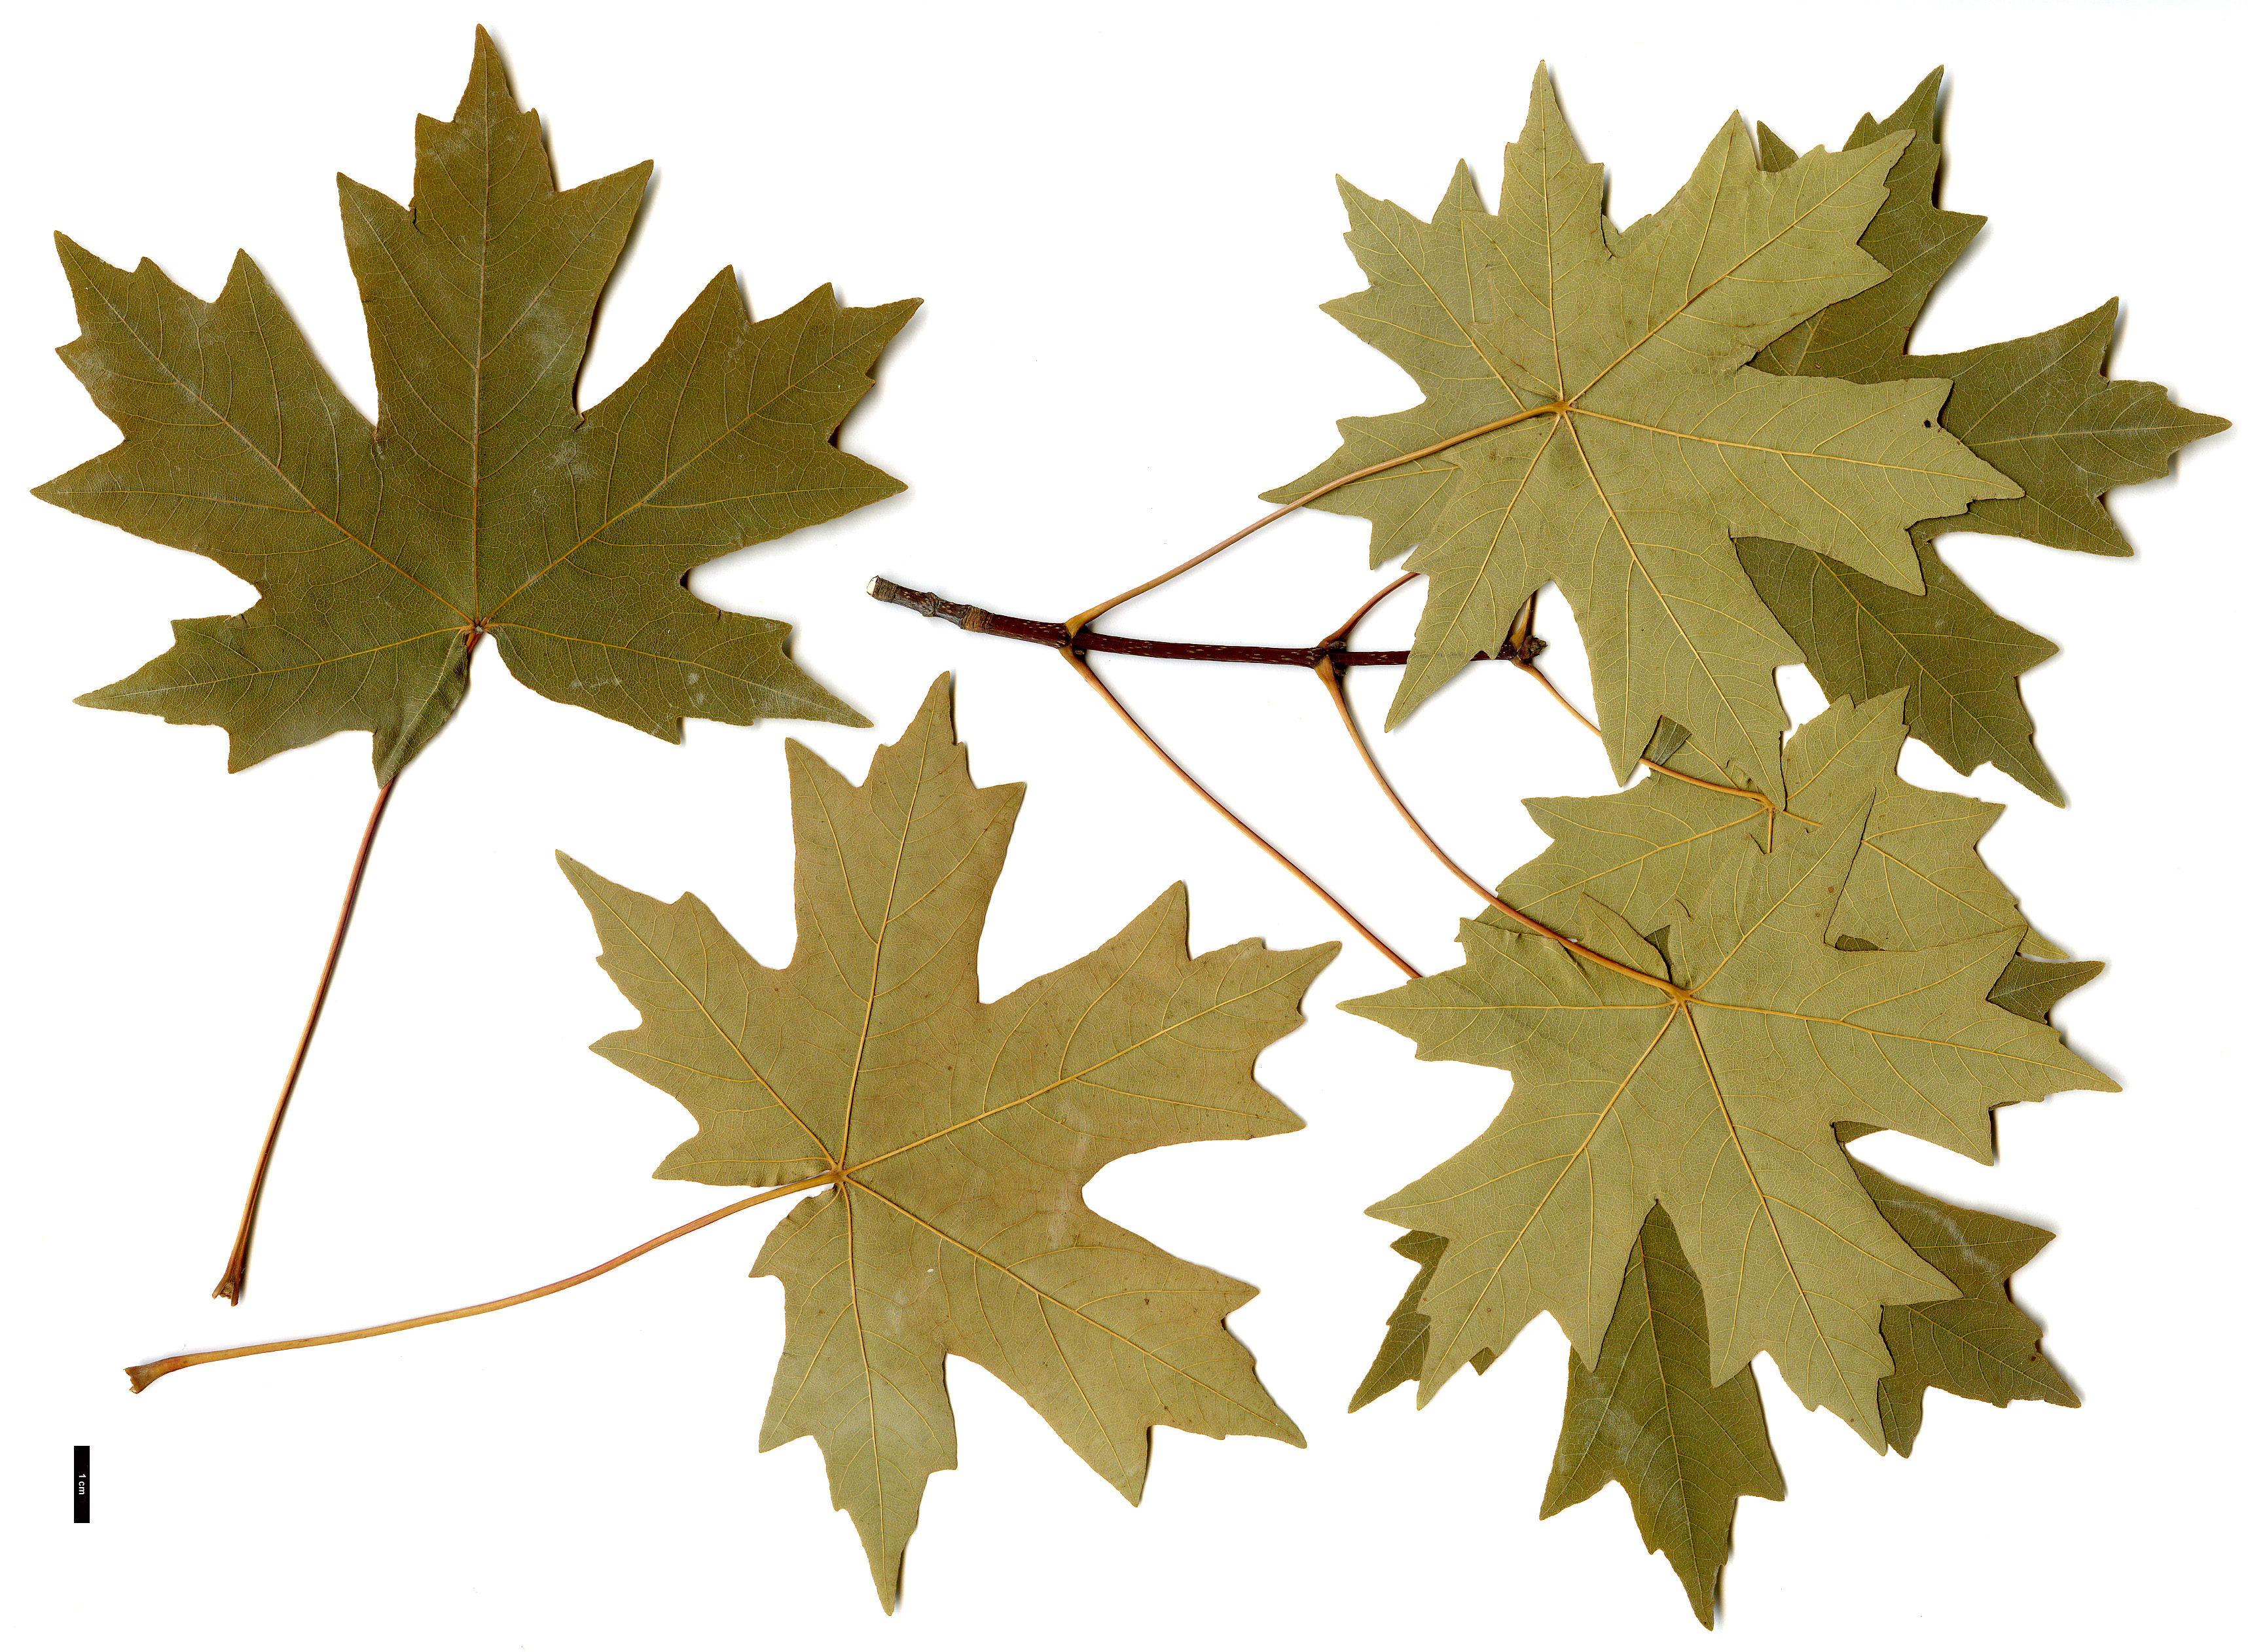 High resolution image: Family: Sapindaceae - Genus: Acer - Taxon: hyrcanum - SpeciesSub: subsp. tauricolum